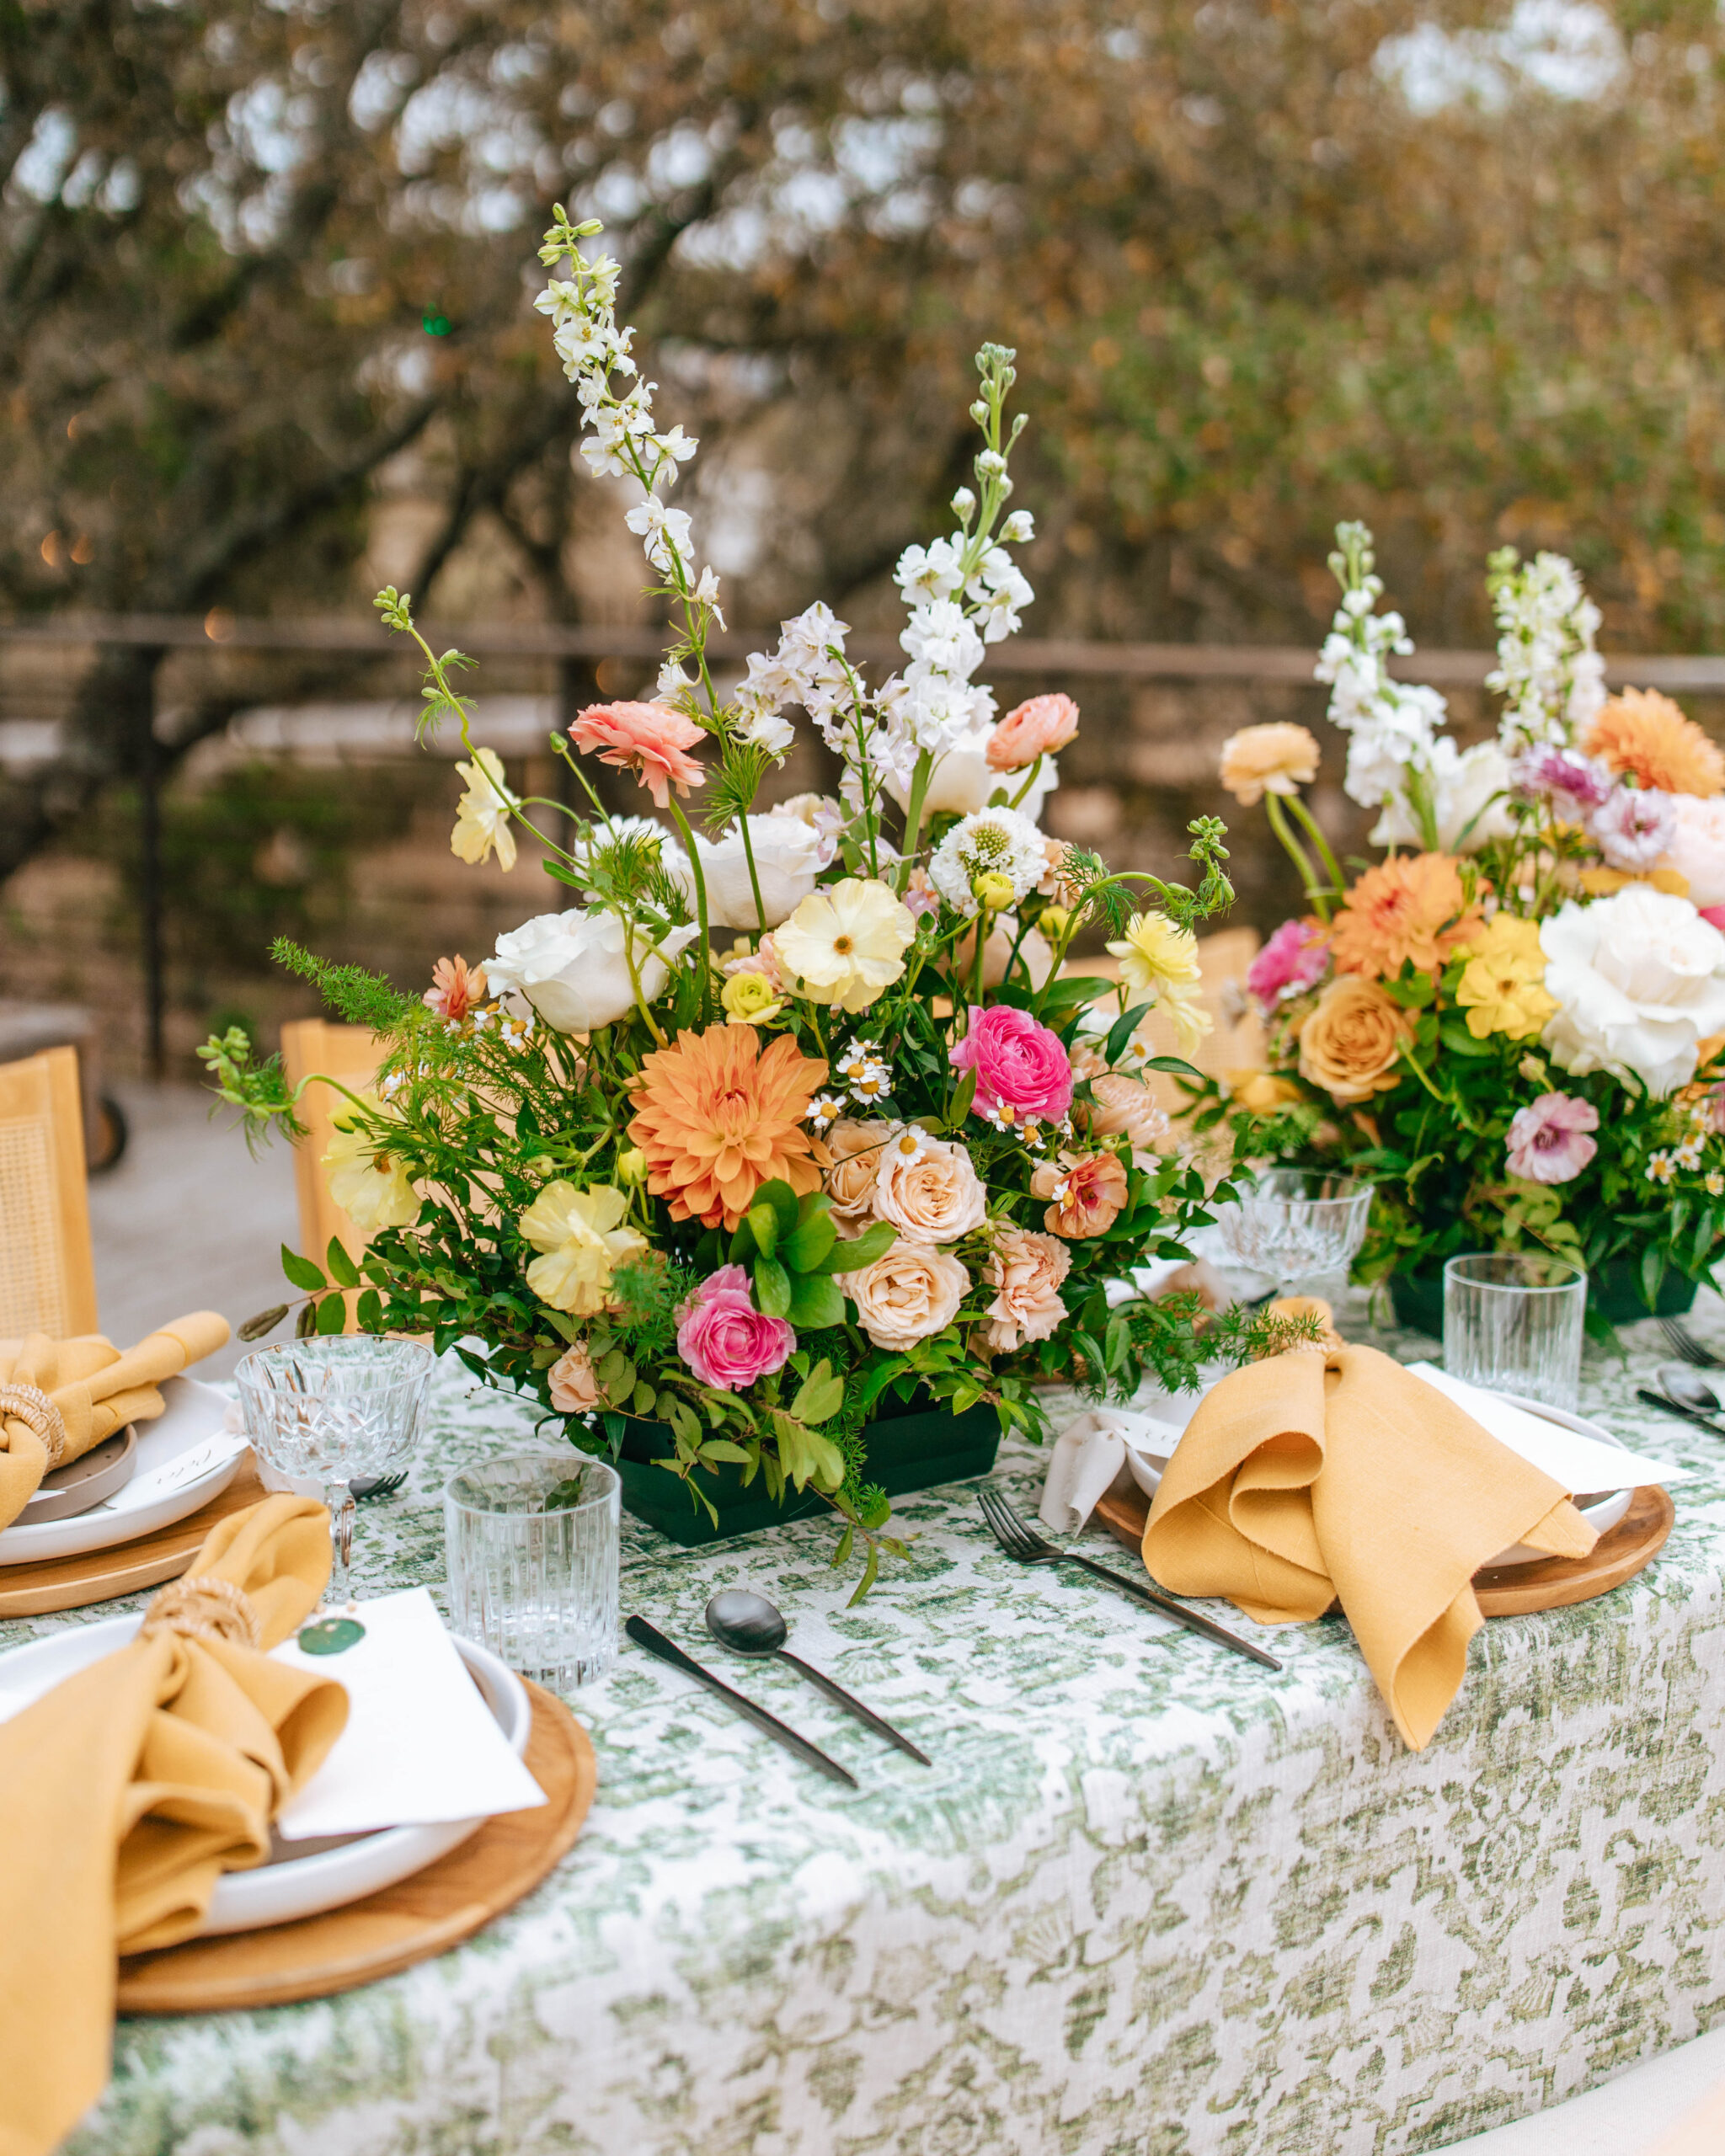 Photograph of a Colorful Spring Wedding Centerpiece. Garden Wedding Themed reception table. 